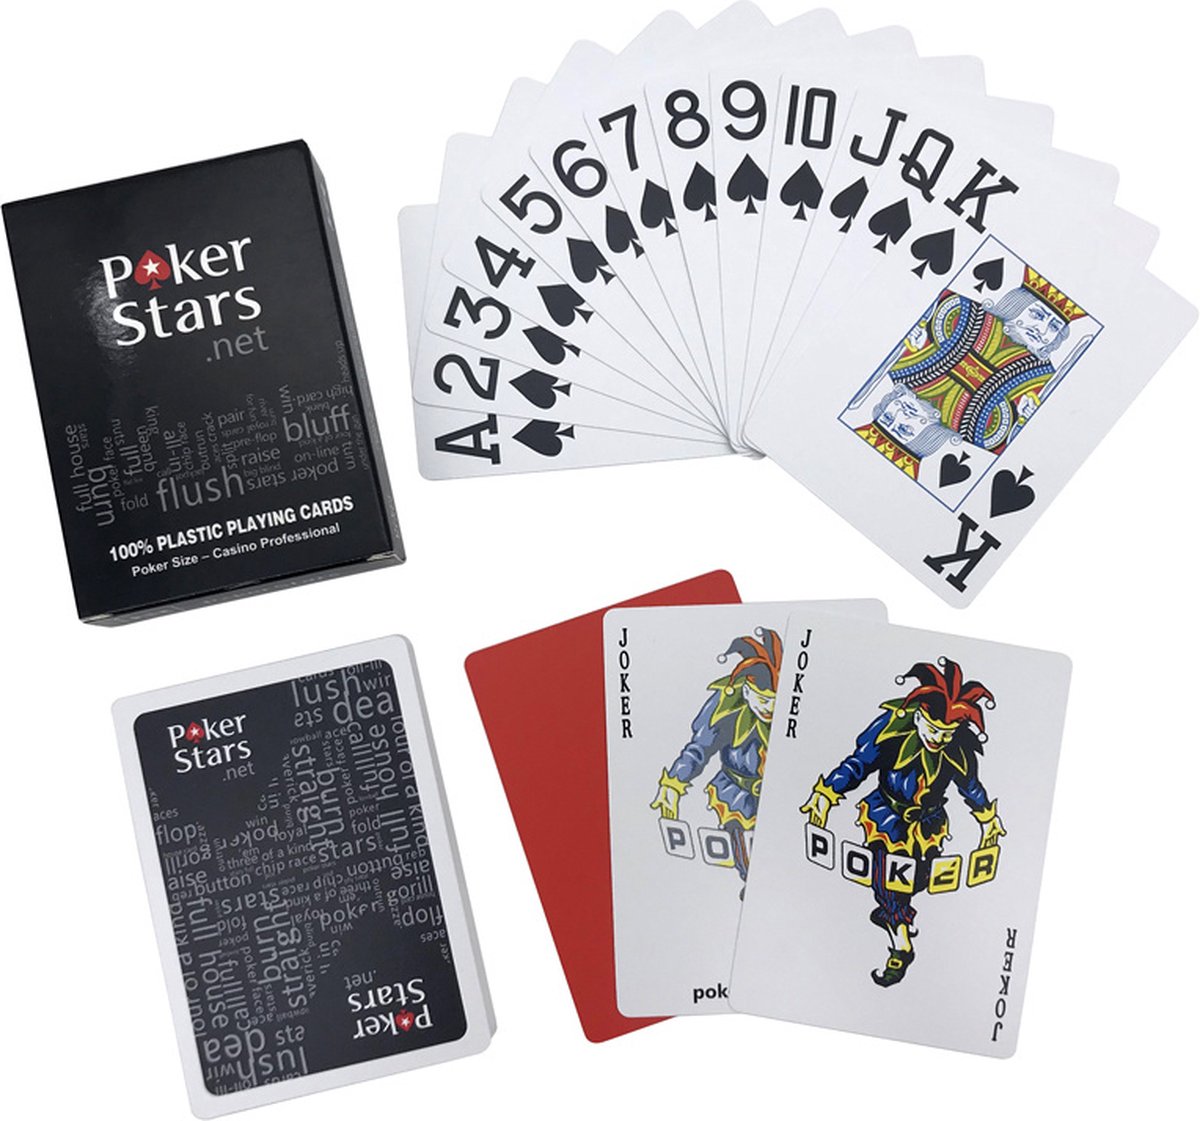 2x) Jeu de cartes en plastique PokerStars (pack duo), Cartes de poker  (grand format